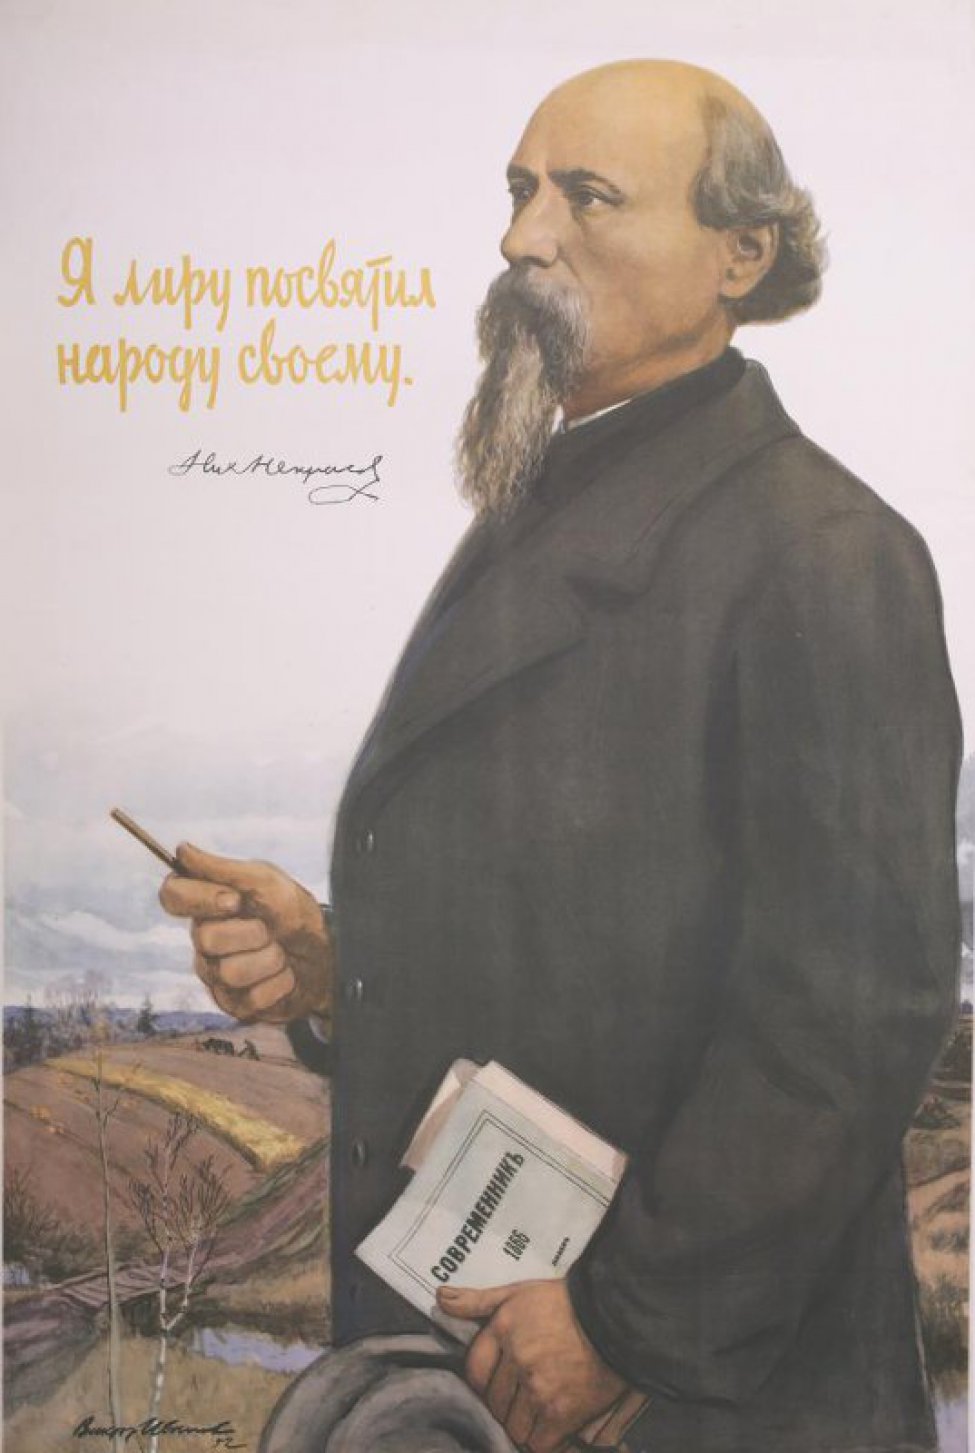 Изображен Н.А. Некрасов в профиль,влево. В правой руке у него карандаш, в левой журнал "Современникъ" 1886г. За ним весенний пейзаж русской деревни.